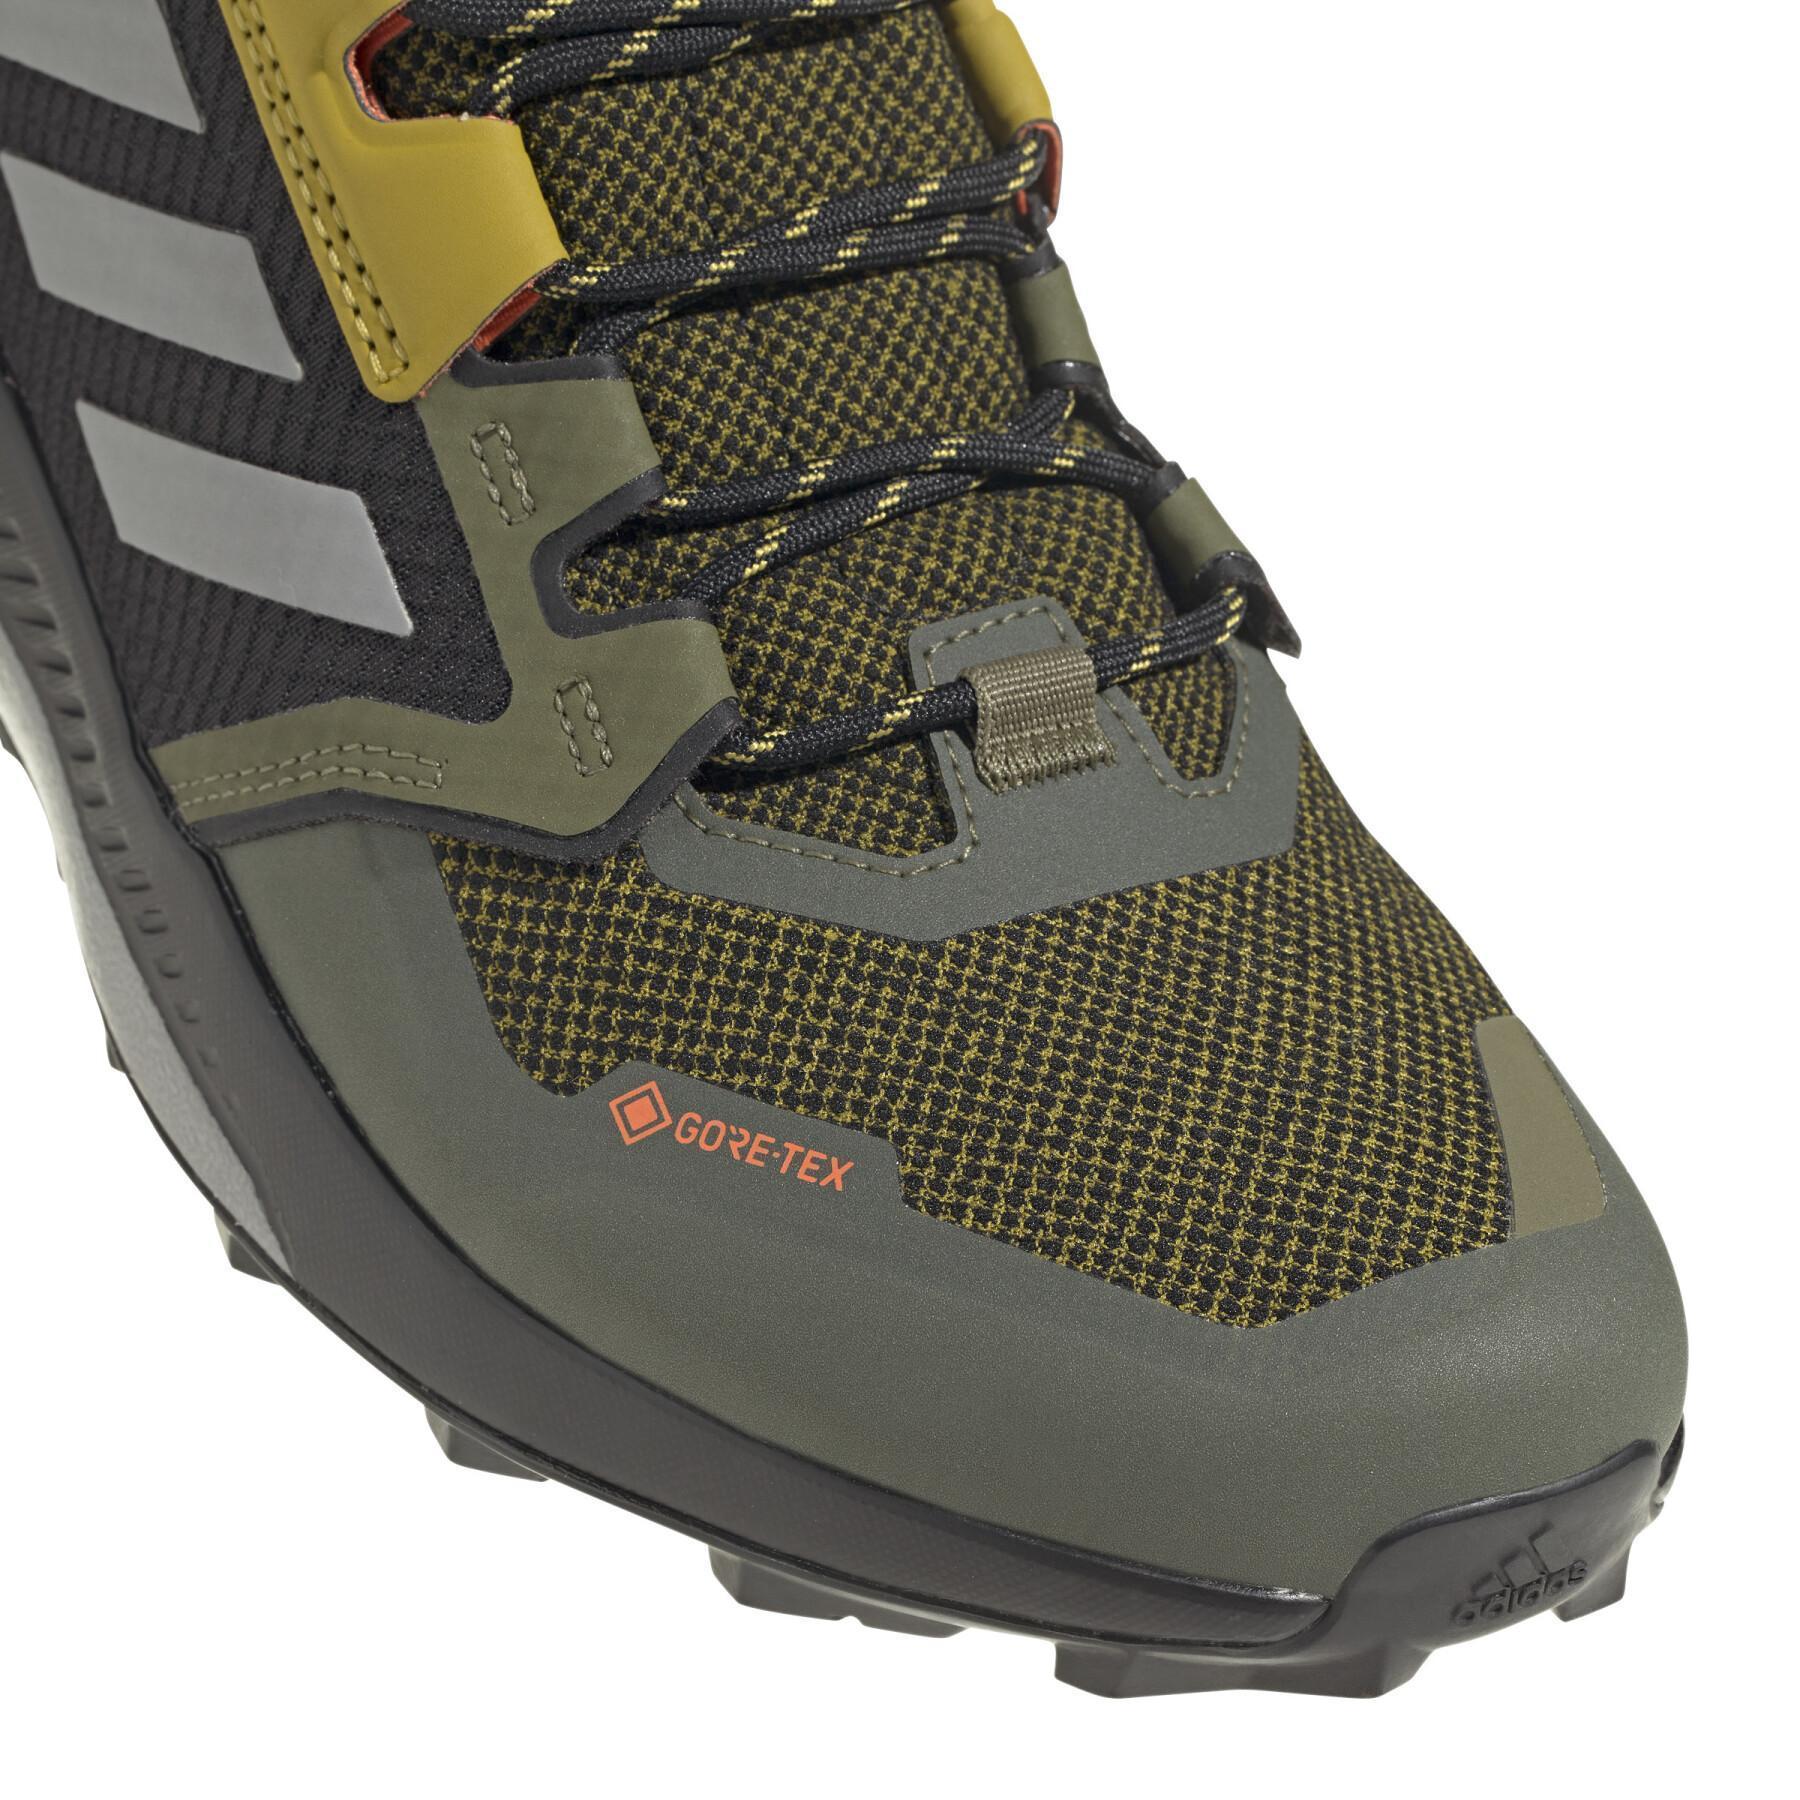 Sapatos para caminhadas adidas Terrex Trailmaker Gore-Tex